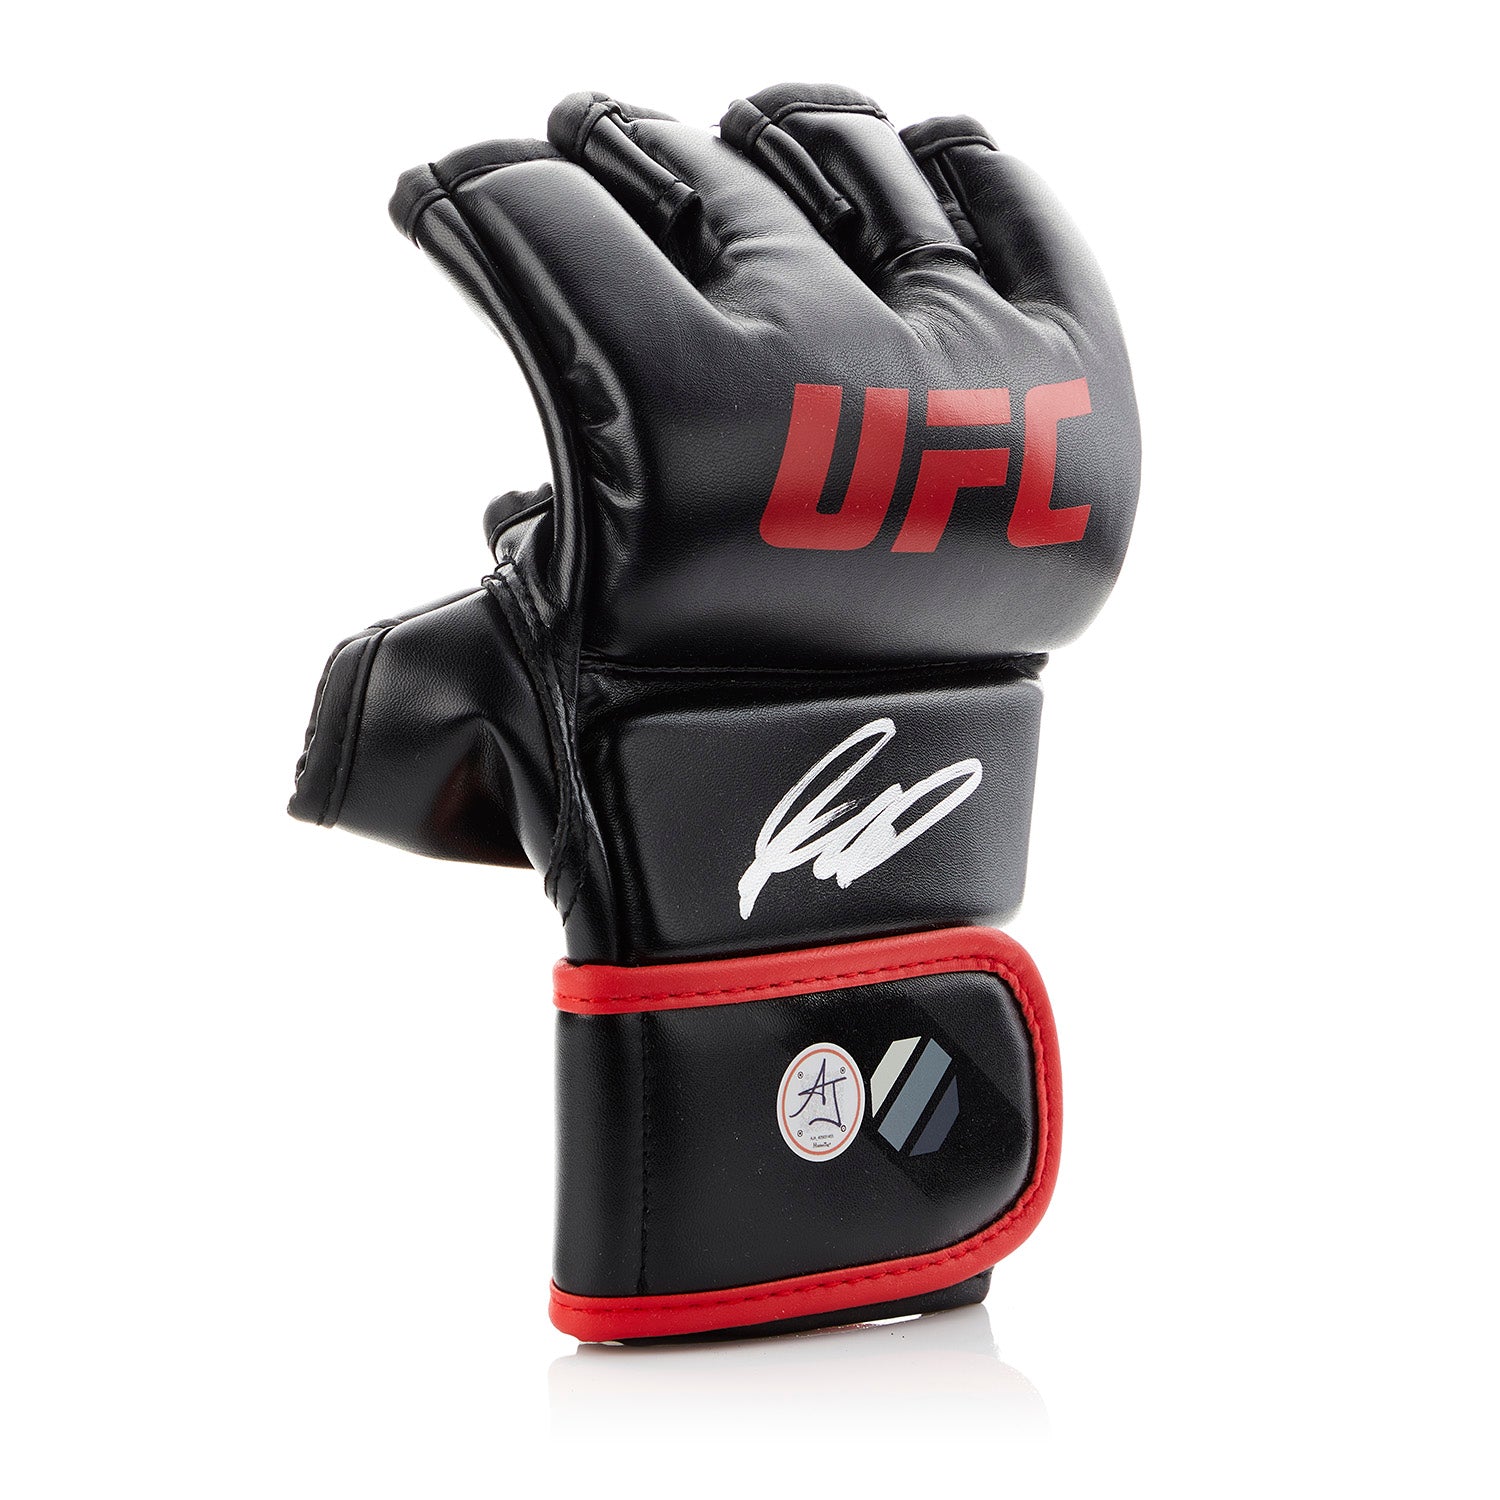 Georges St-Pierre Autographed Official UFC Combat Glove